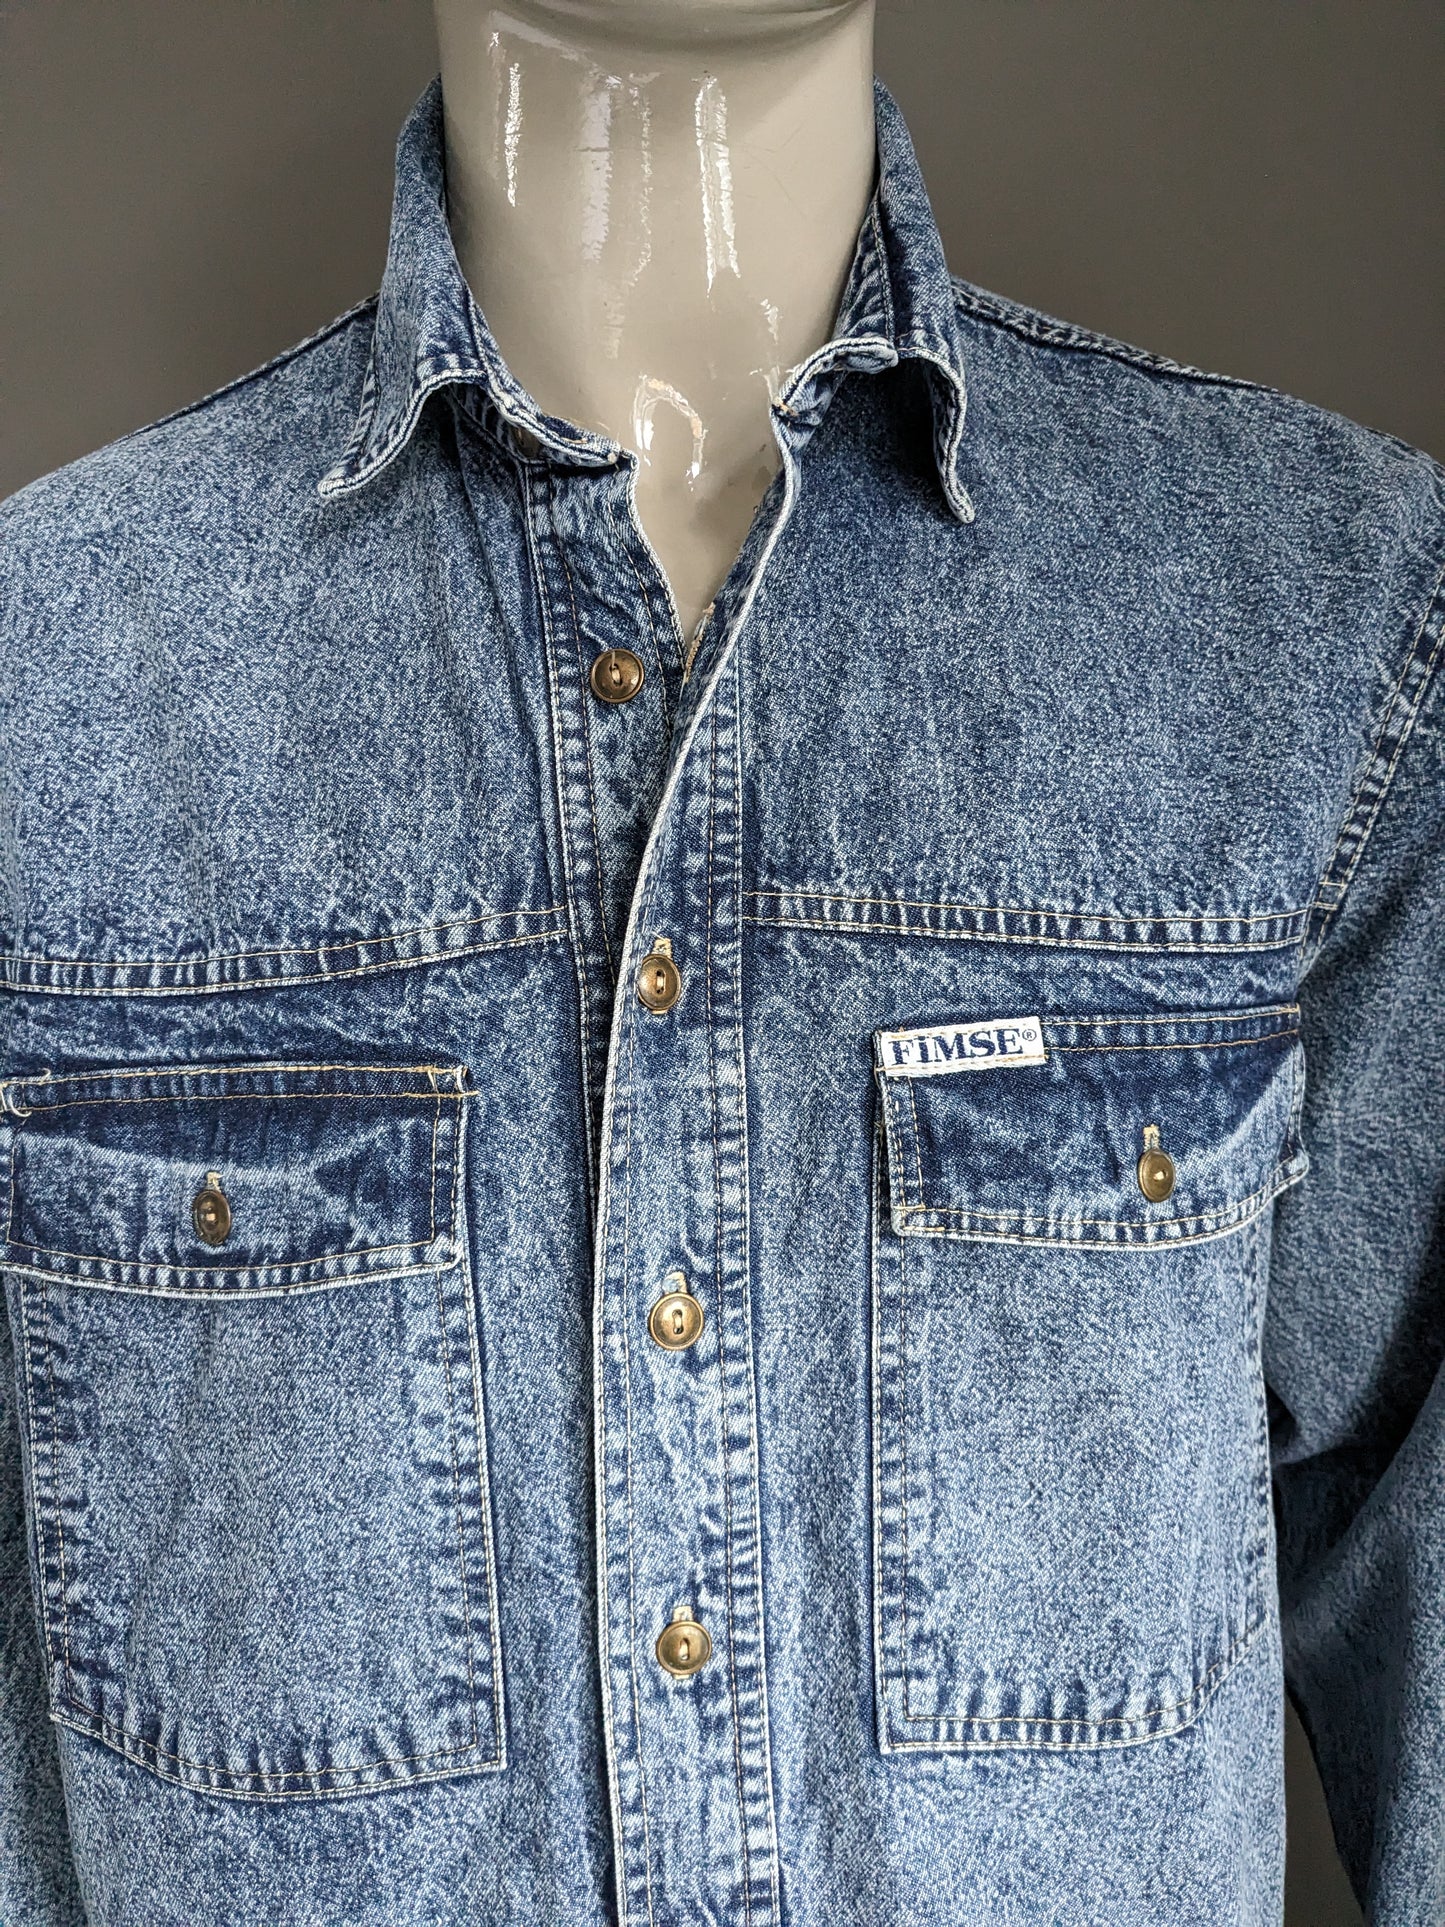 Vintage Fimse Jeans Hemd dickerer Stoff. Blau gemischt. Größe L.